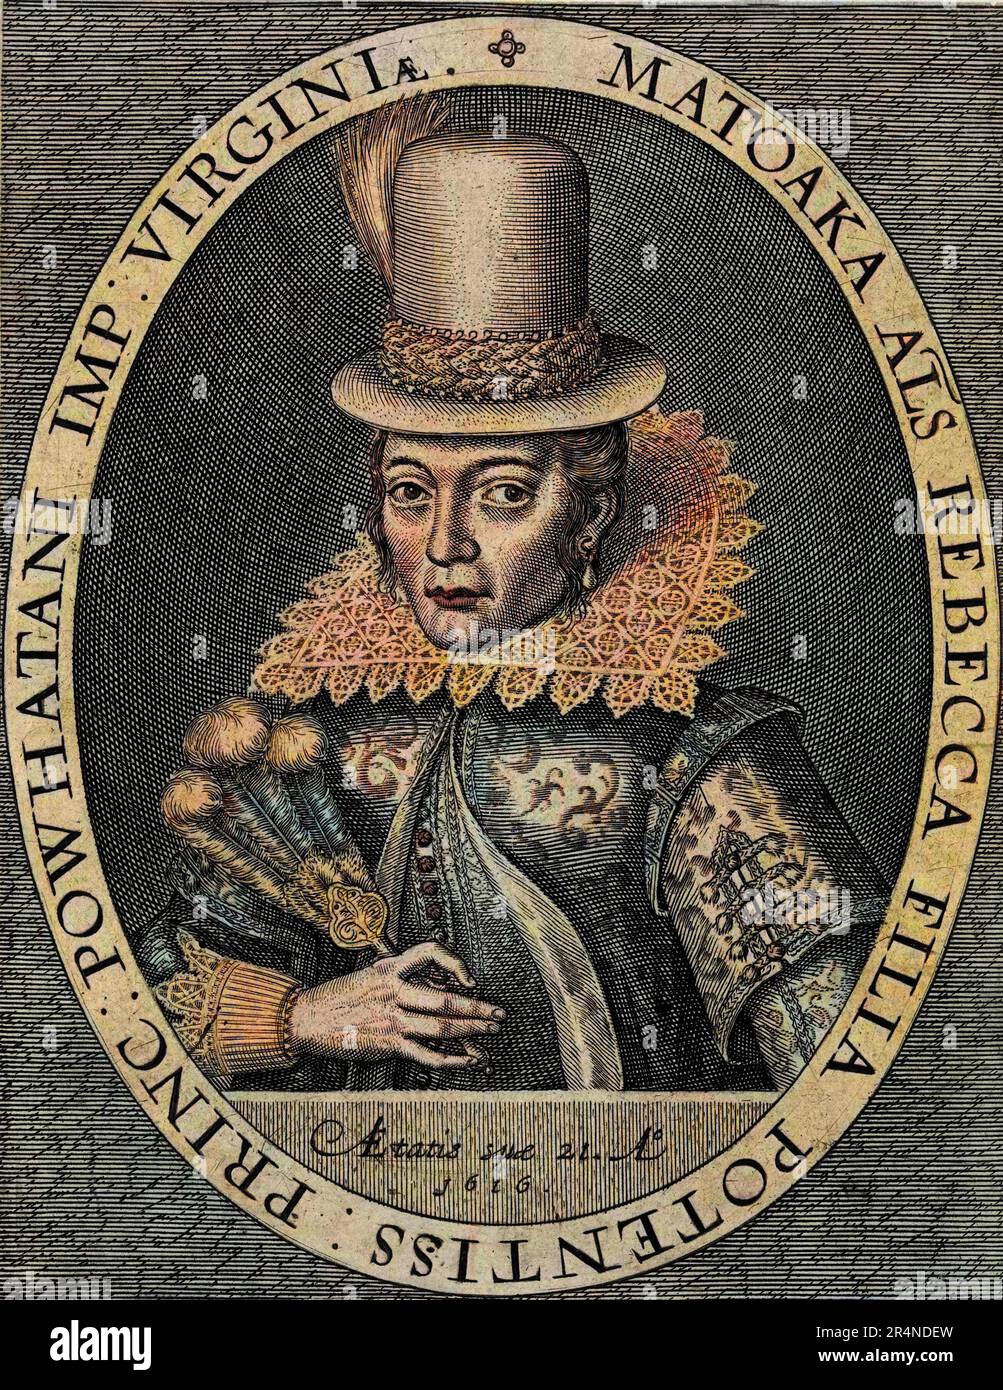 Pocahontas - Portrait de Pocahontas (1595-1617)( ou Mataoka ou Amonute, puis Rebecca Rolfe), princesse amerindienne. Gravure d'apres Simon de Passe Foto Stock